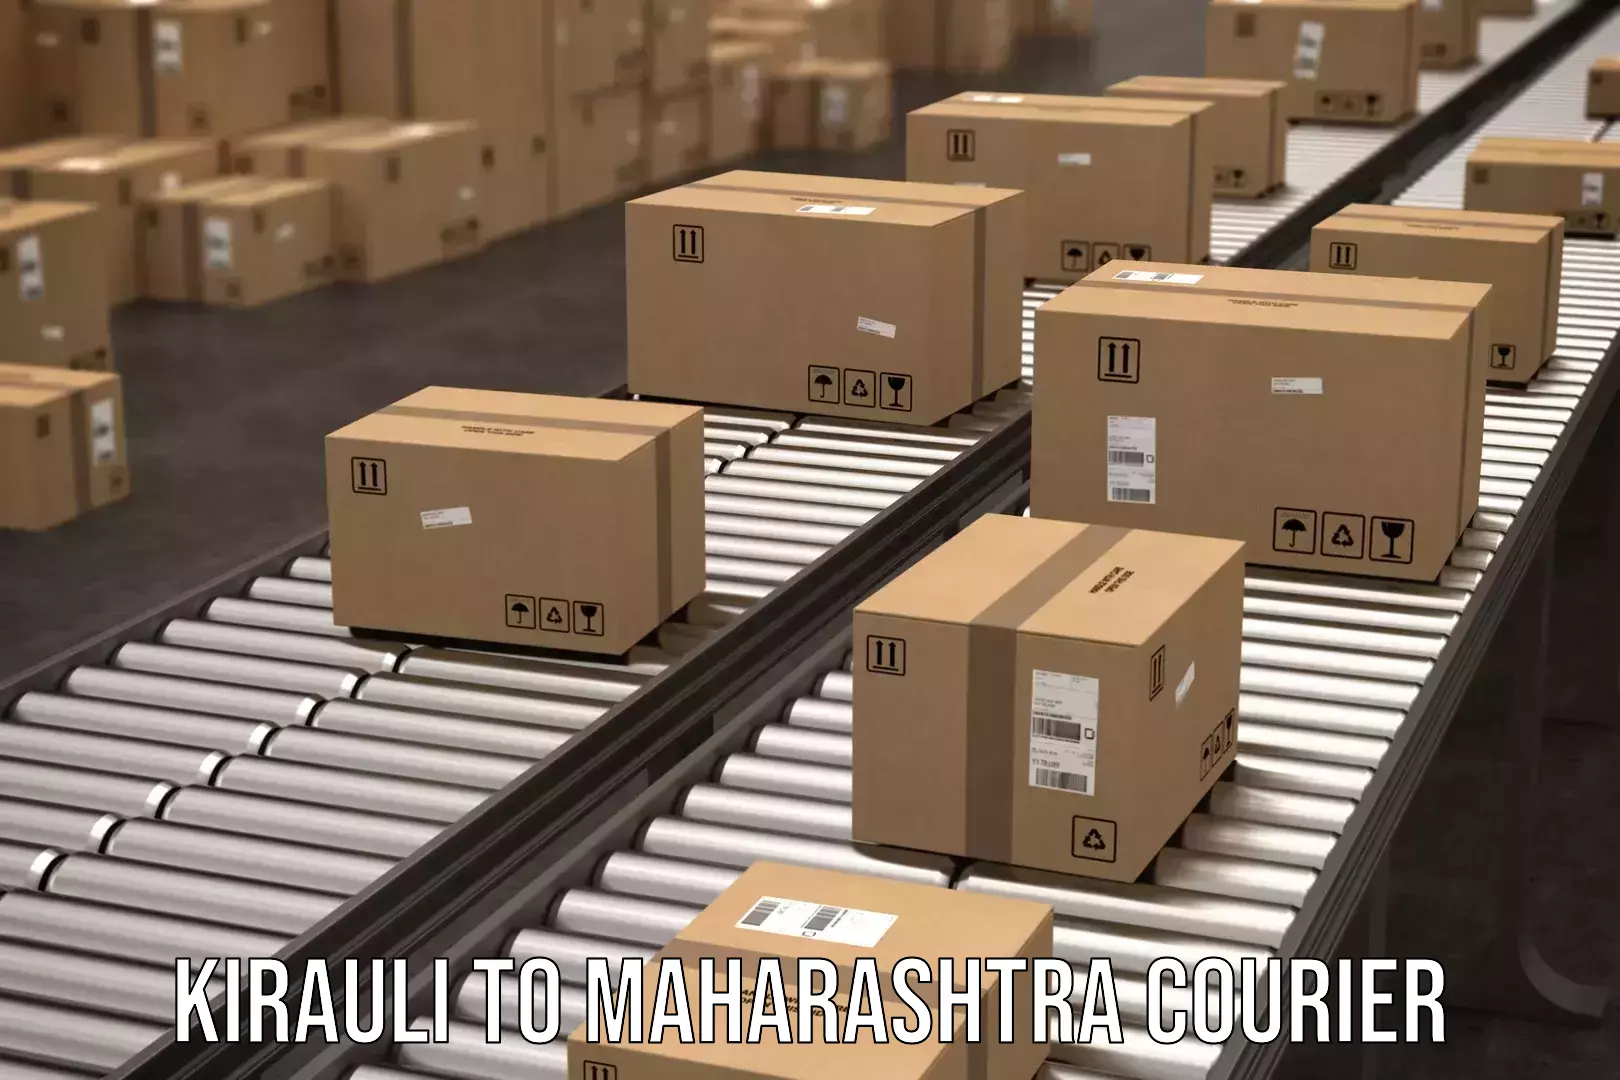 Trackable shipping service Kirauli to Maharashtra